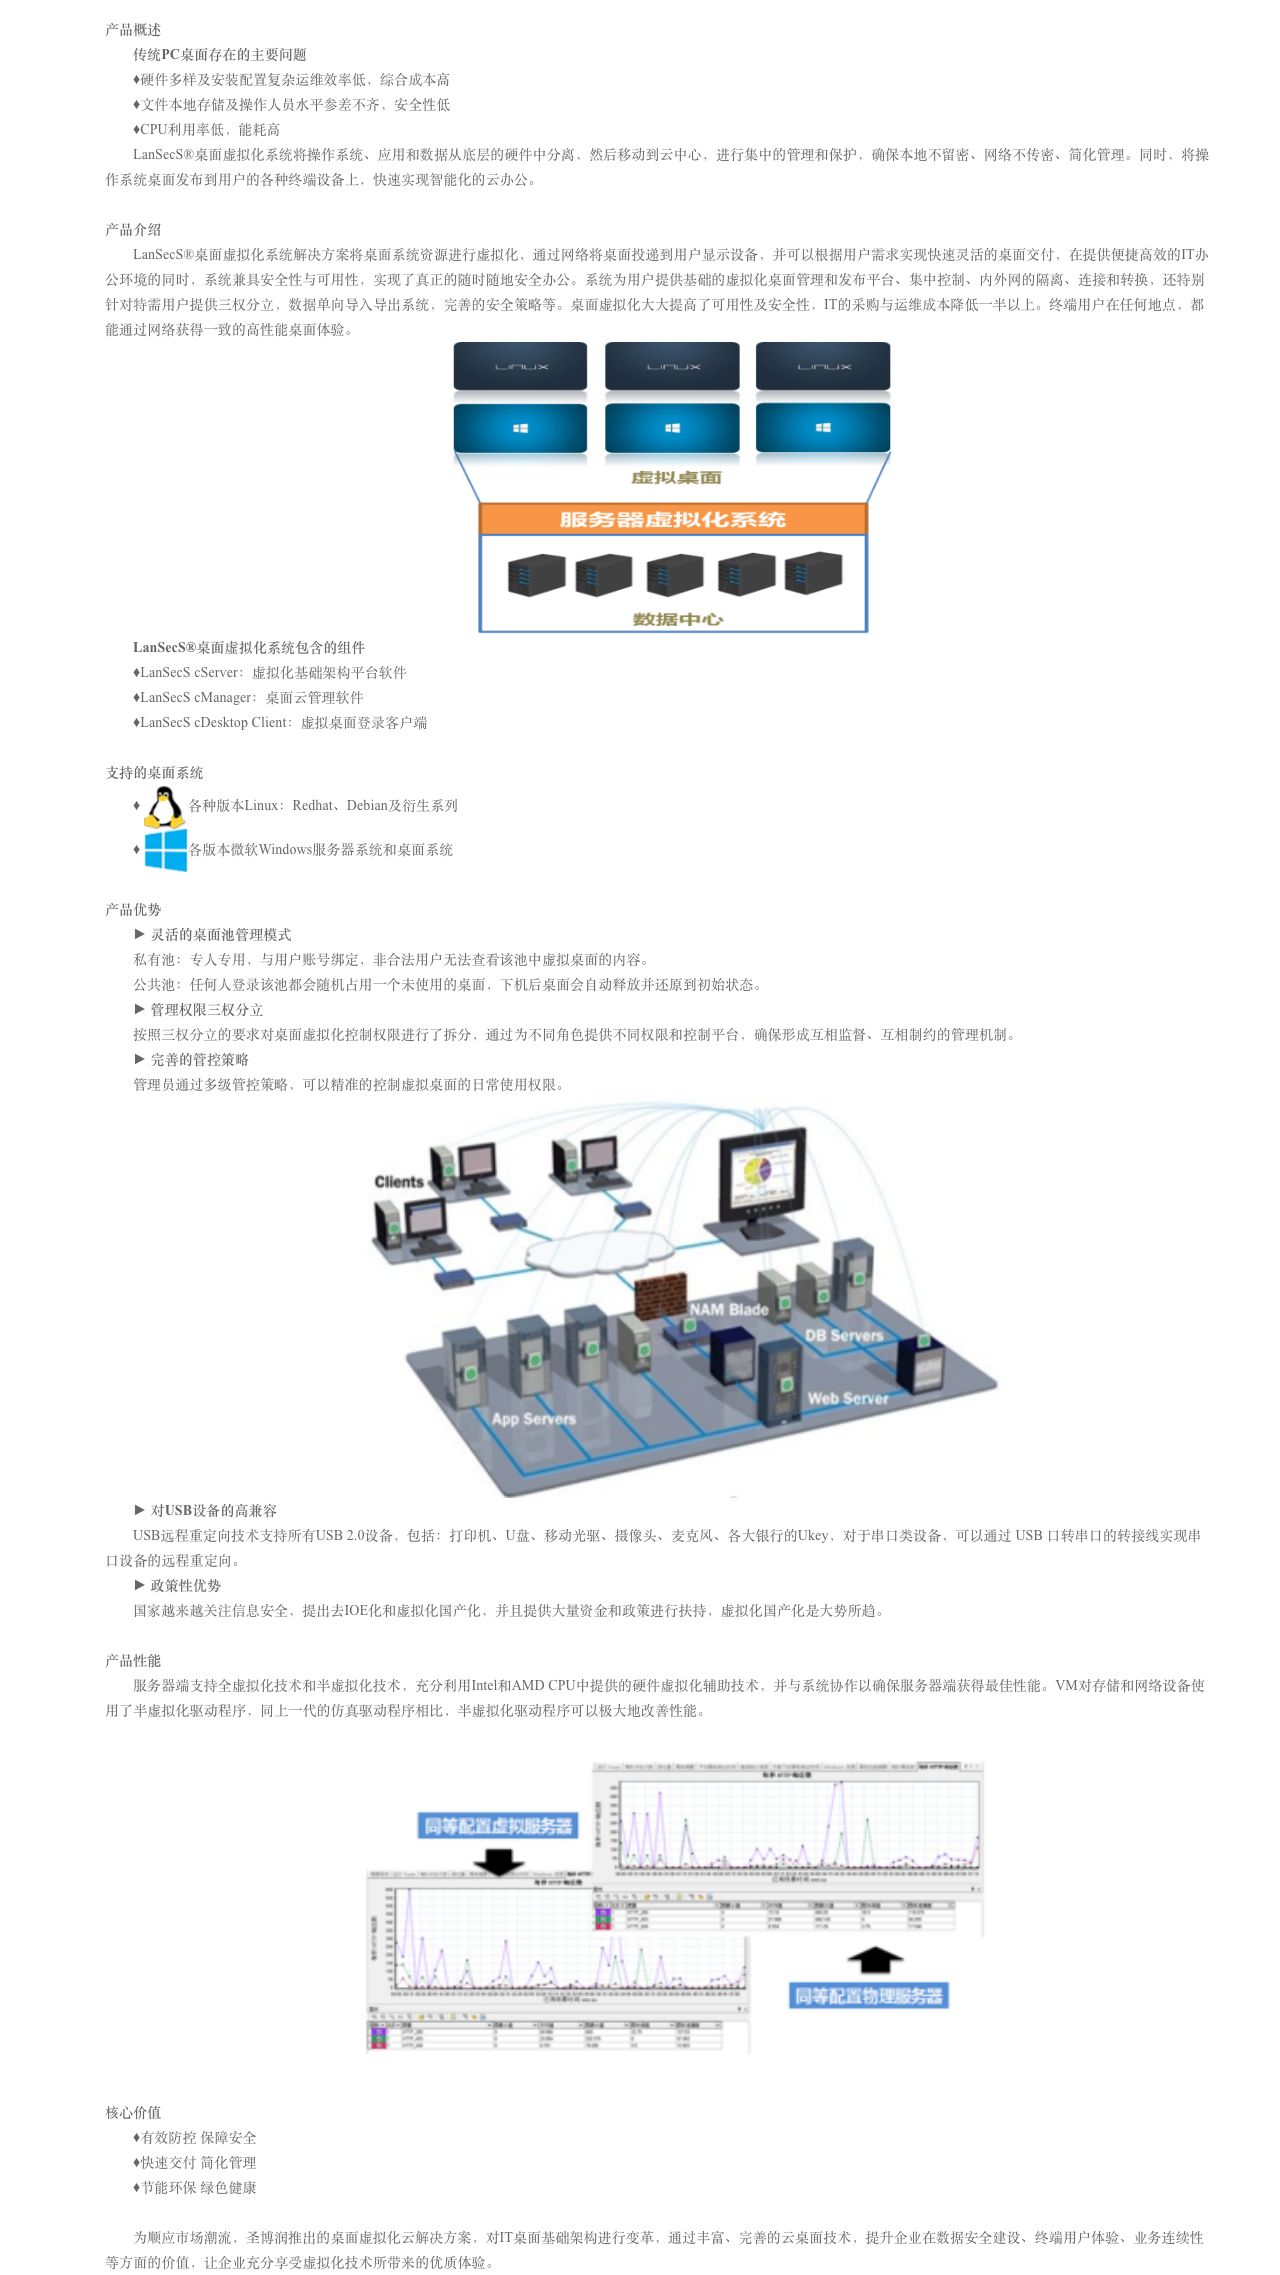 LanSecS®桌面虚拟化系统-解决方案介绍